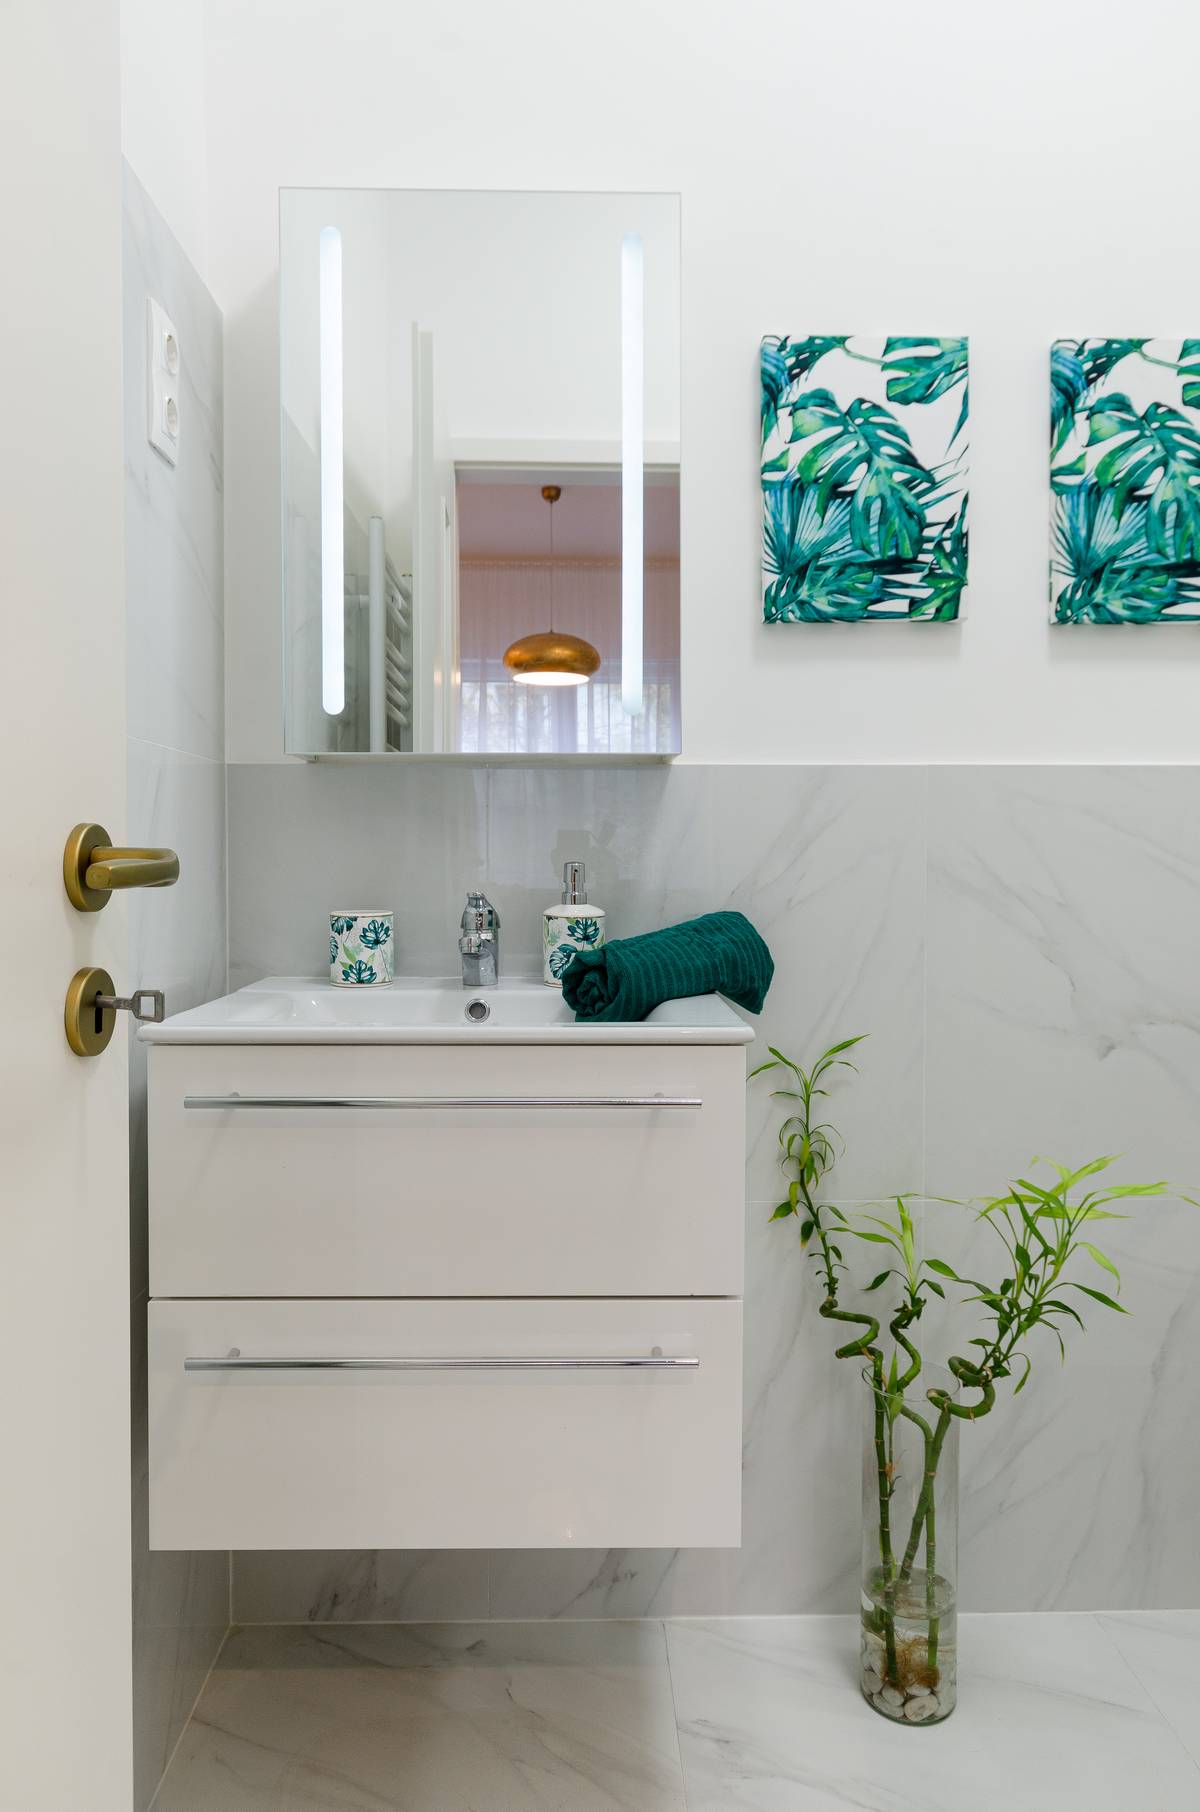 Những bức tranh treo tường, cốc nước súc miệng, khăn tắm đều theo xu hướng sắc màu xanh ngọc lục bảo. Một chiếc lọ thủy tinh dáng cao trưng cây trúc cảnh đặc biệt tốt theo quan niệm phong thủy.